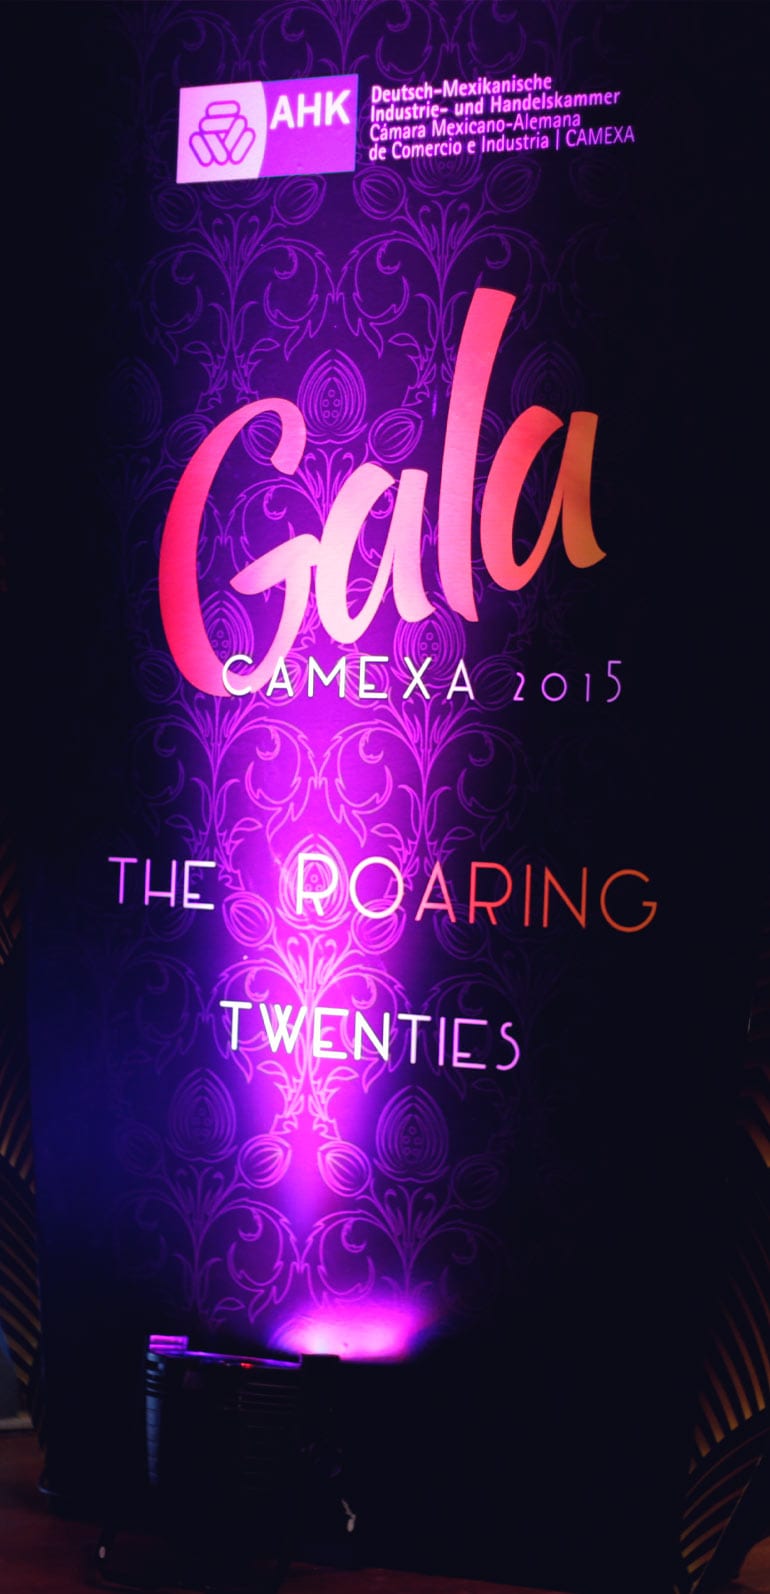 SATmexico-dmc-events-mexico-gala-dinner-branding-welcome-board-camexa